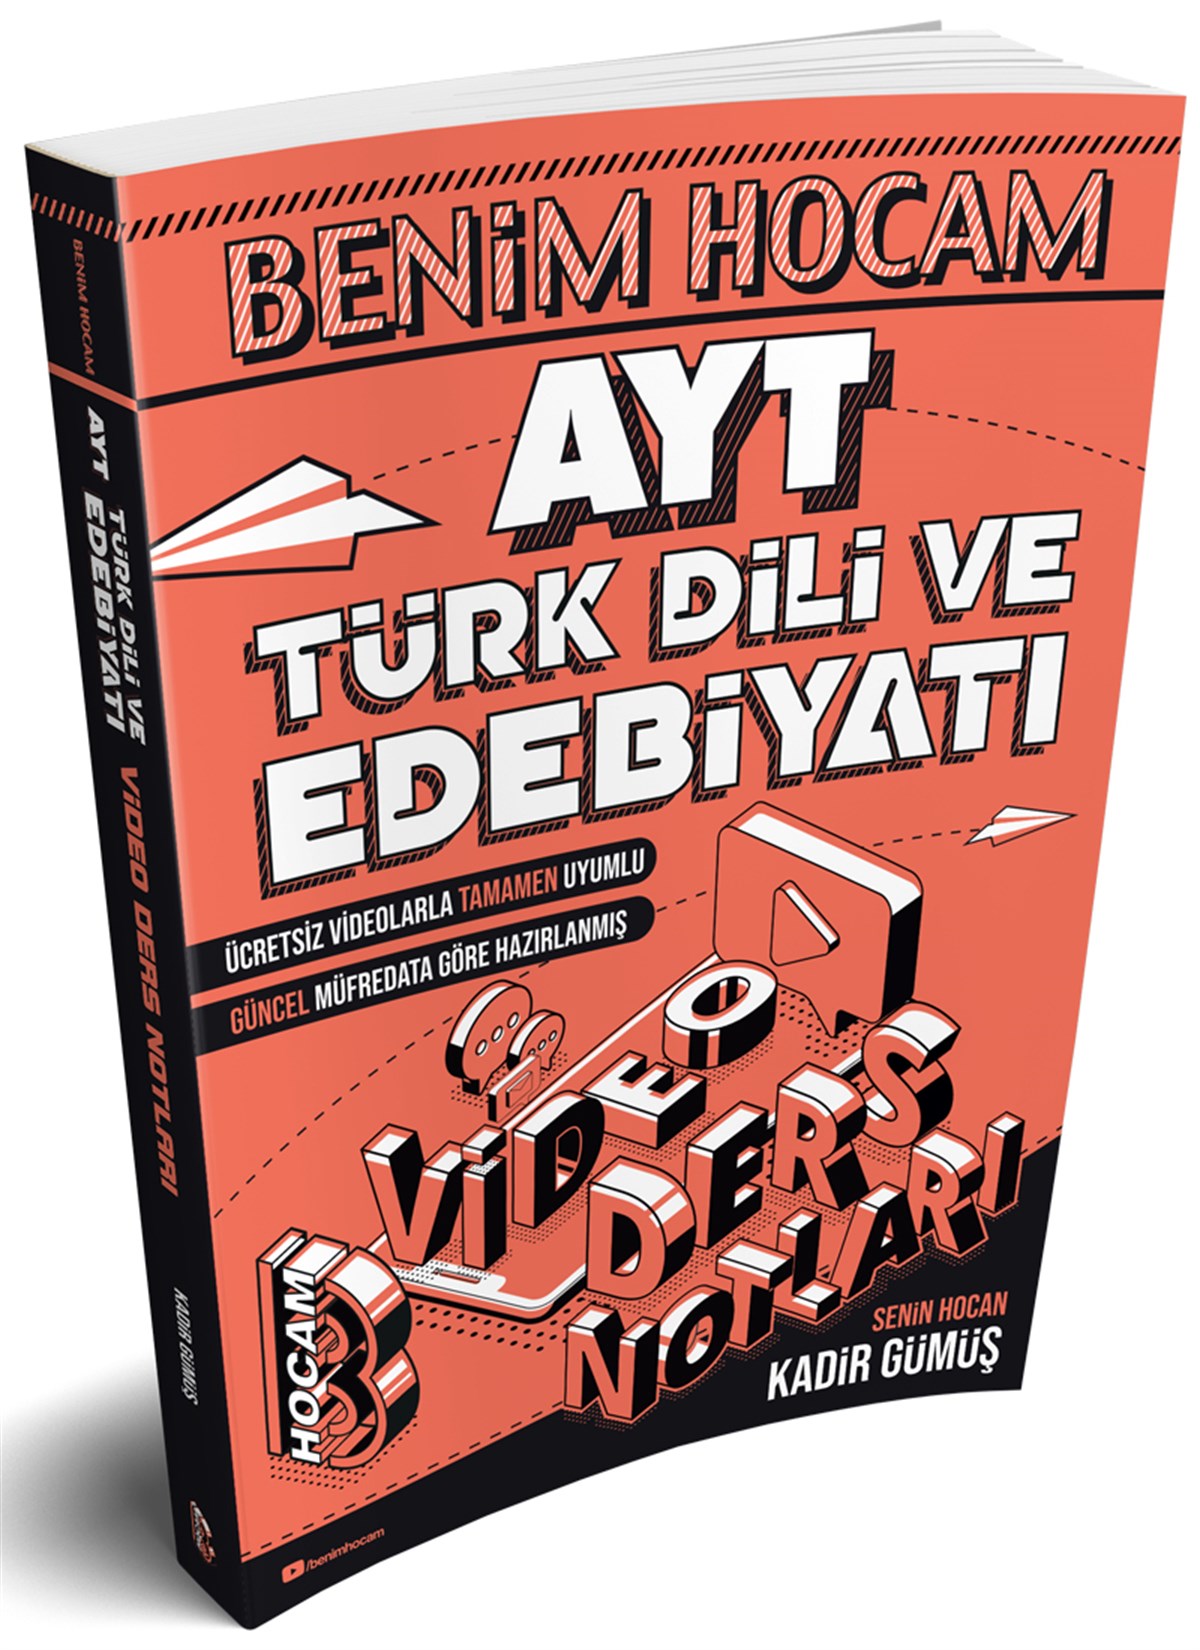 2020 AYT Türk Dili ve Edebiyatı Video Ders Notları Benim Hocam Yayınları